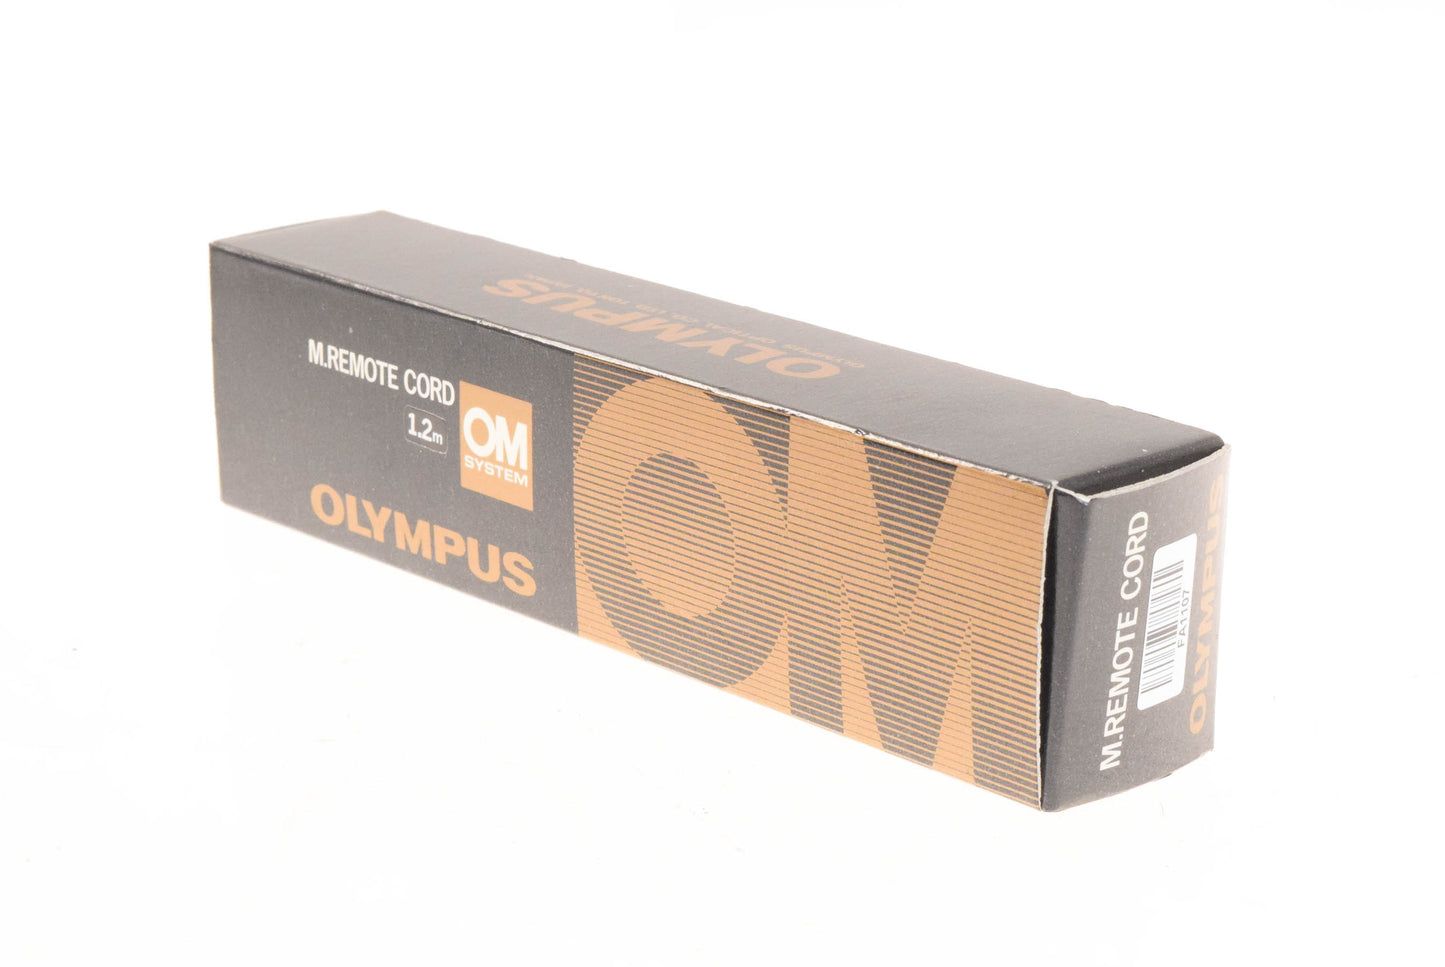 Olympus OM M Remote Cord 1.2m